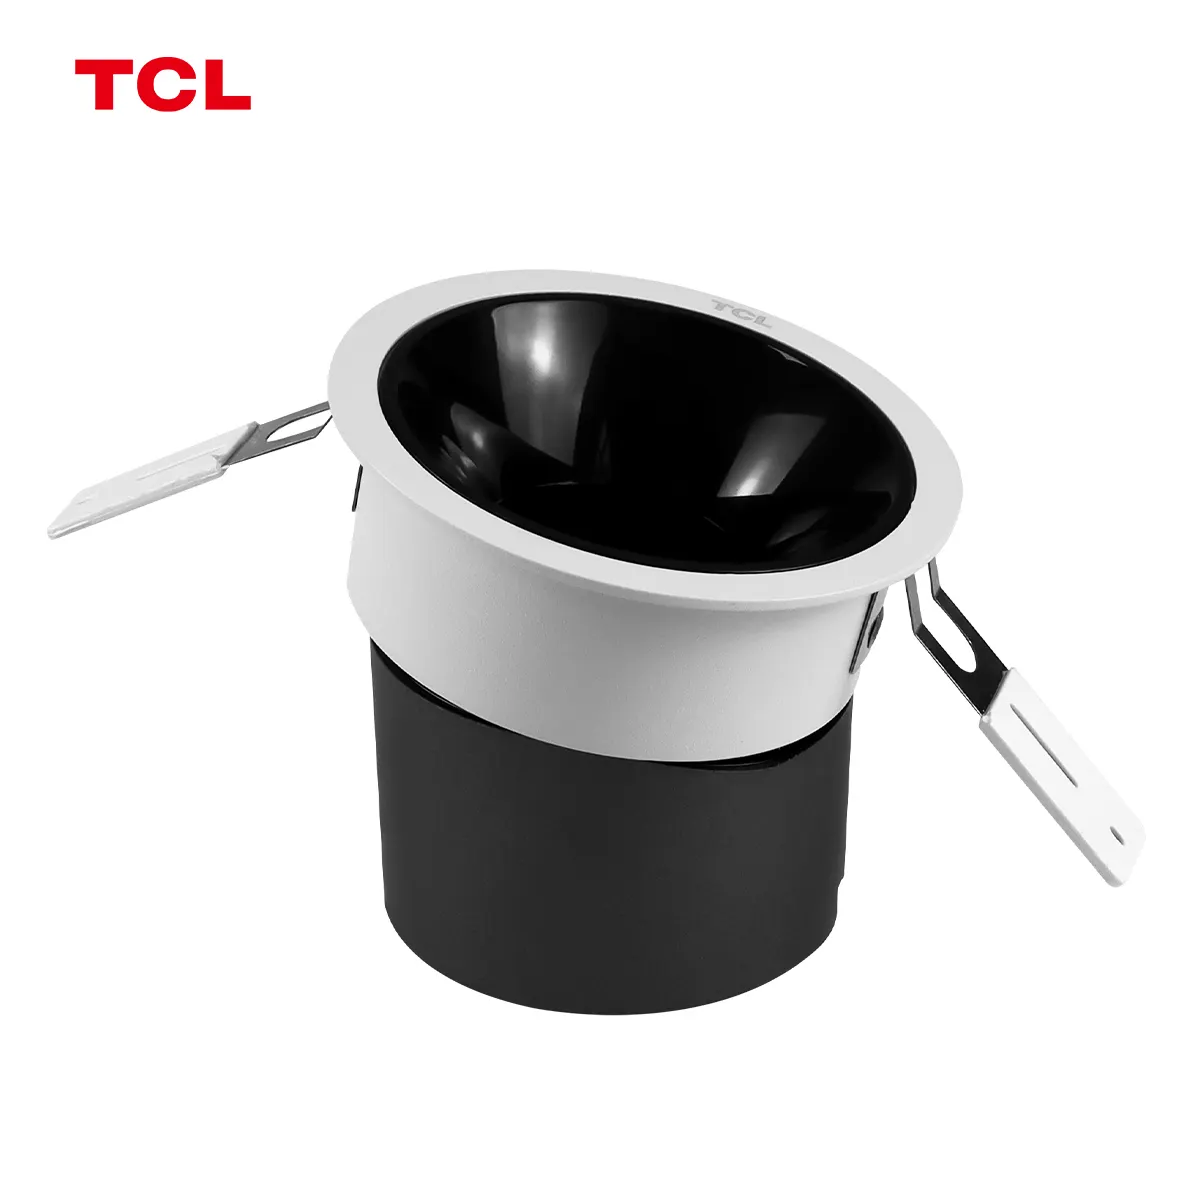 TCL 9W cri90 luci spot antiglare incasso in alluminio nero per illuminazione domestica spotlight da salotto